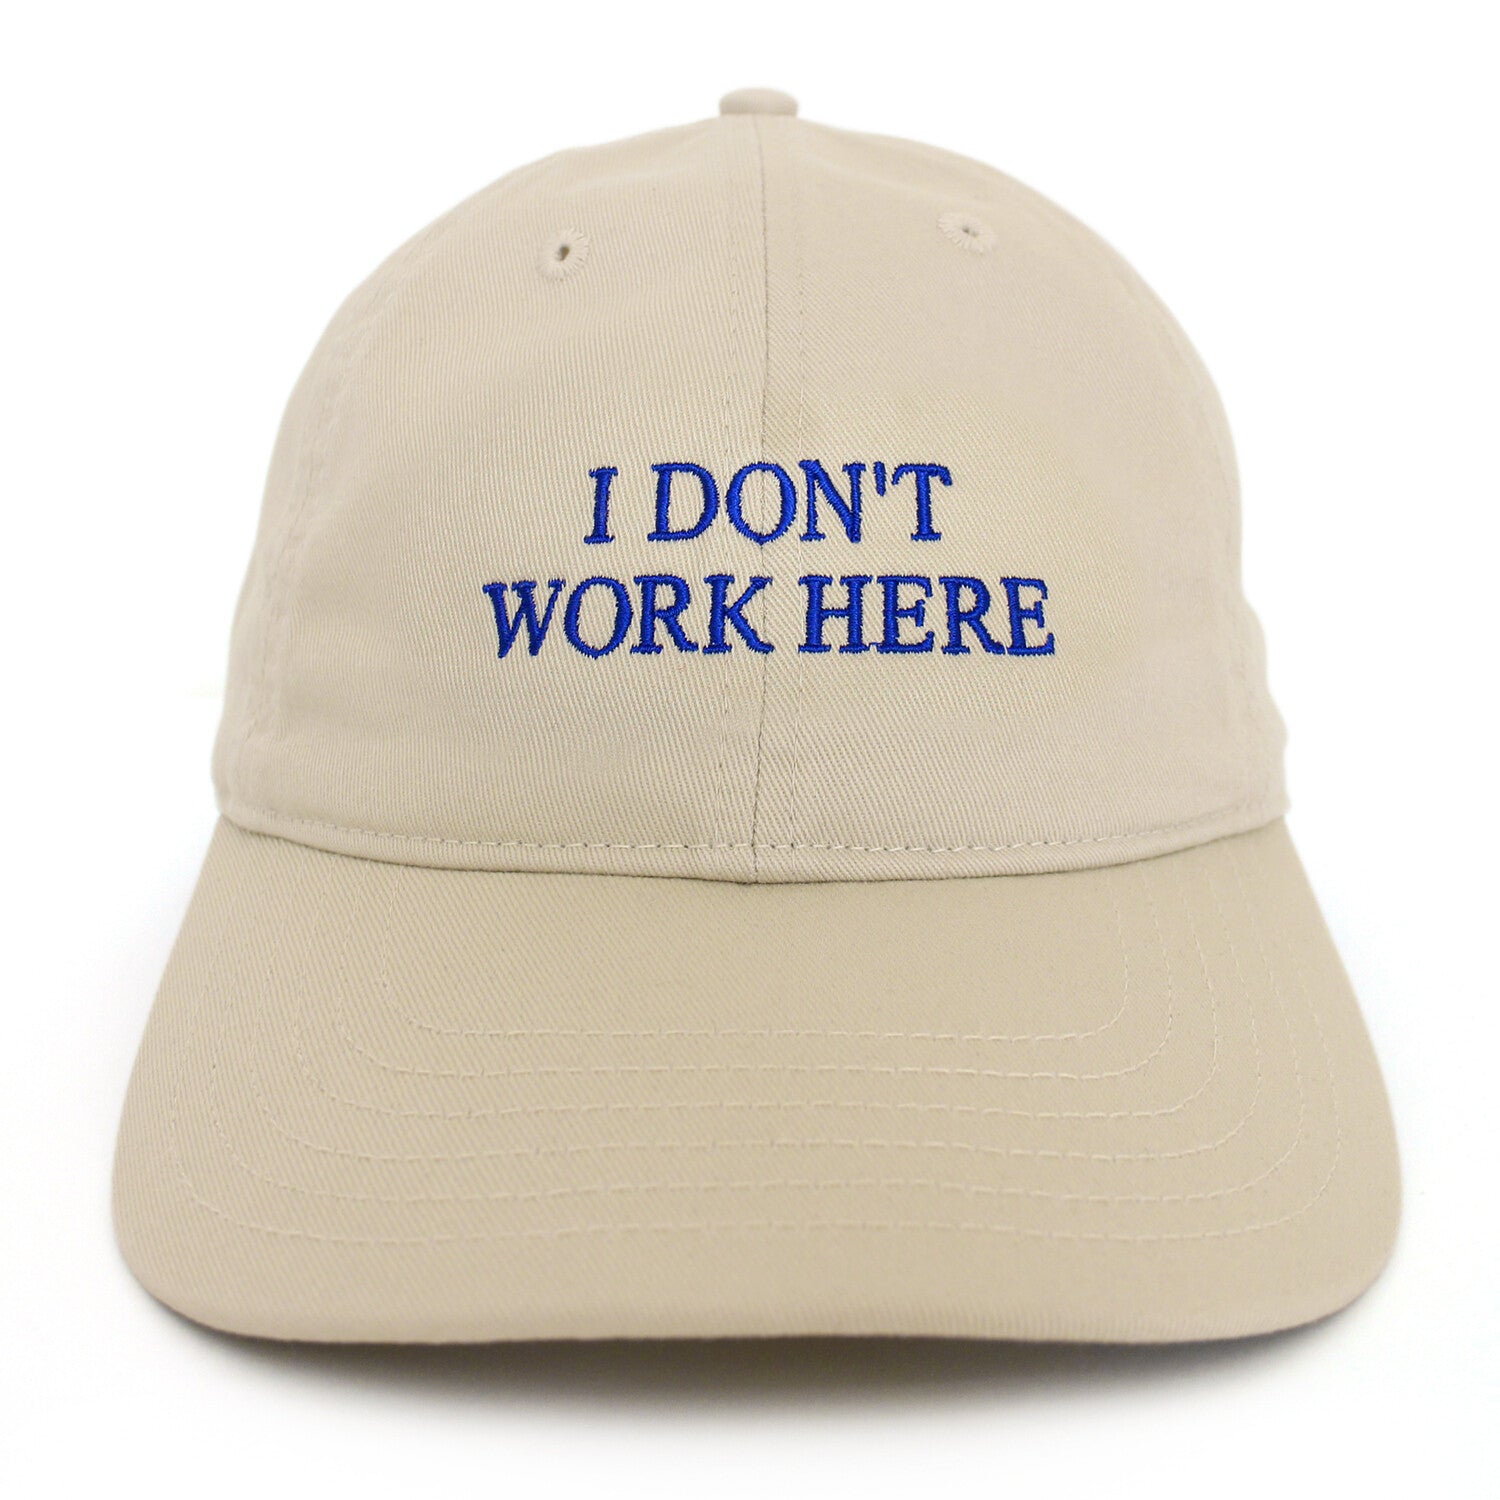 Cap - Sorry I don't work here - beige